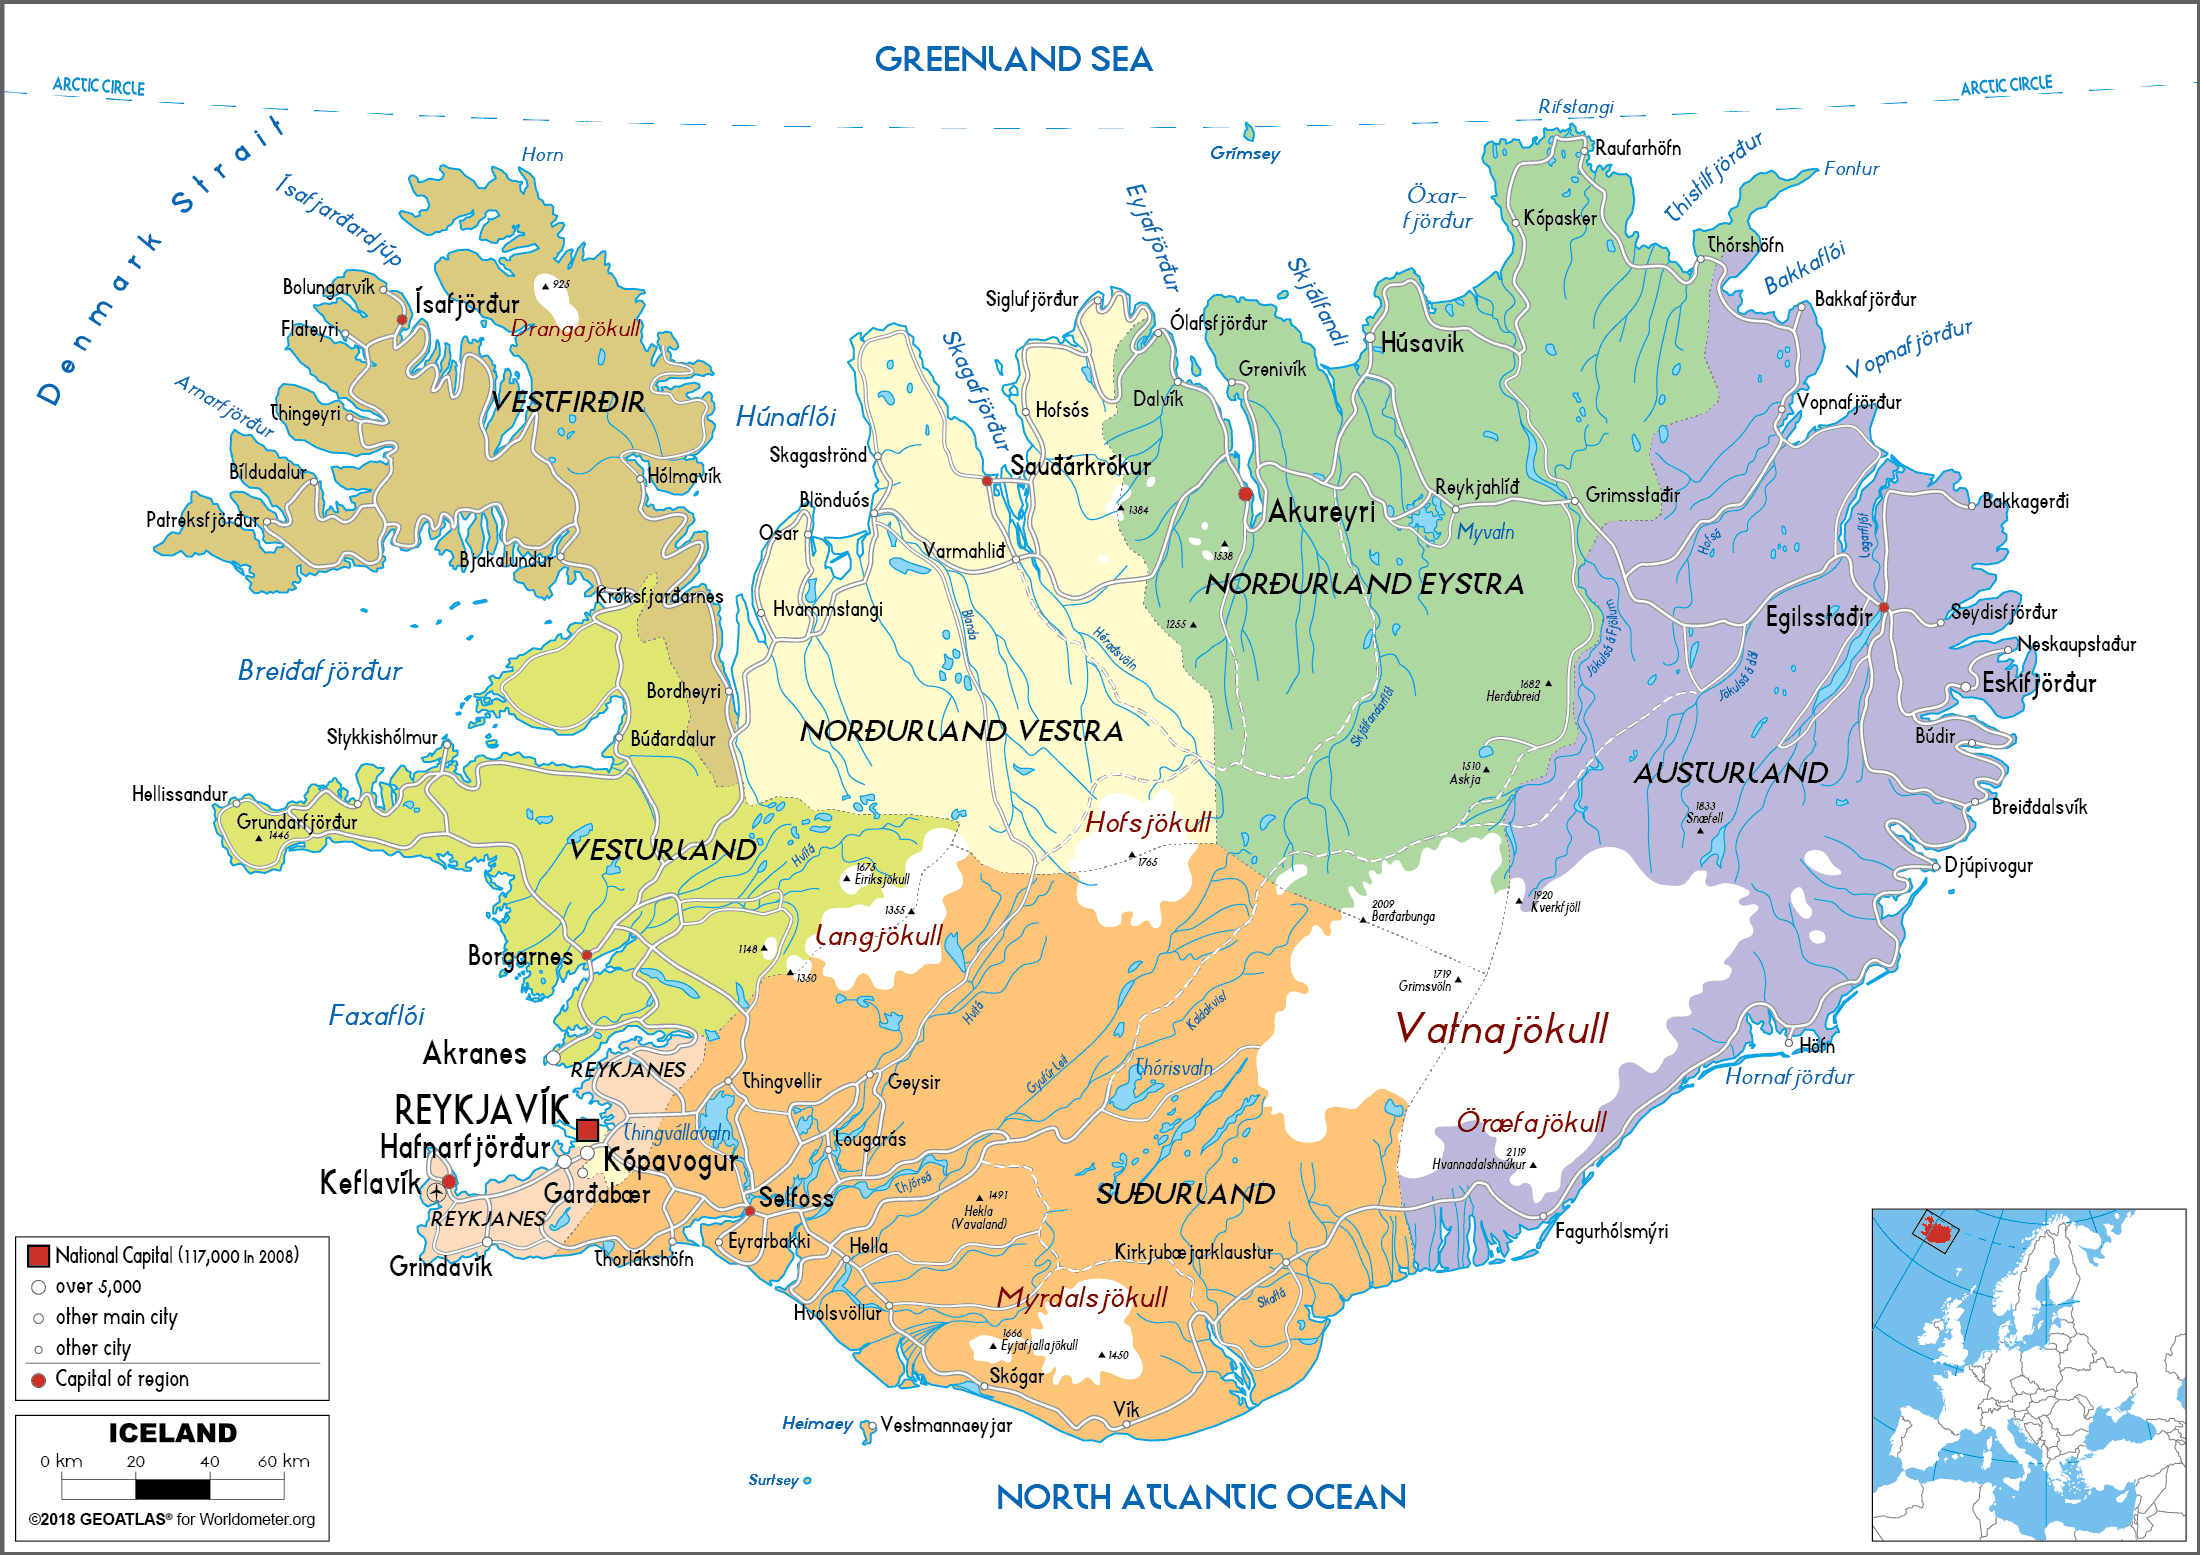 Iceland Map: Iceland là một điểm đến tuyệt vời cho những người yêu thích thiên nhiên hoang dã. Với bản đồ Iceland Map, bạn có thể dễ dàng tìm kiếm những địa điểm thú vị để khám phá, từ những dòng sông trong vắt đến những khu rừng sương mù và những vách đá núi hiểm trở.